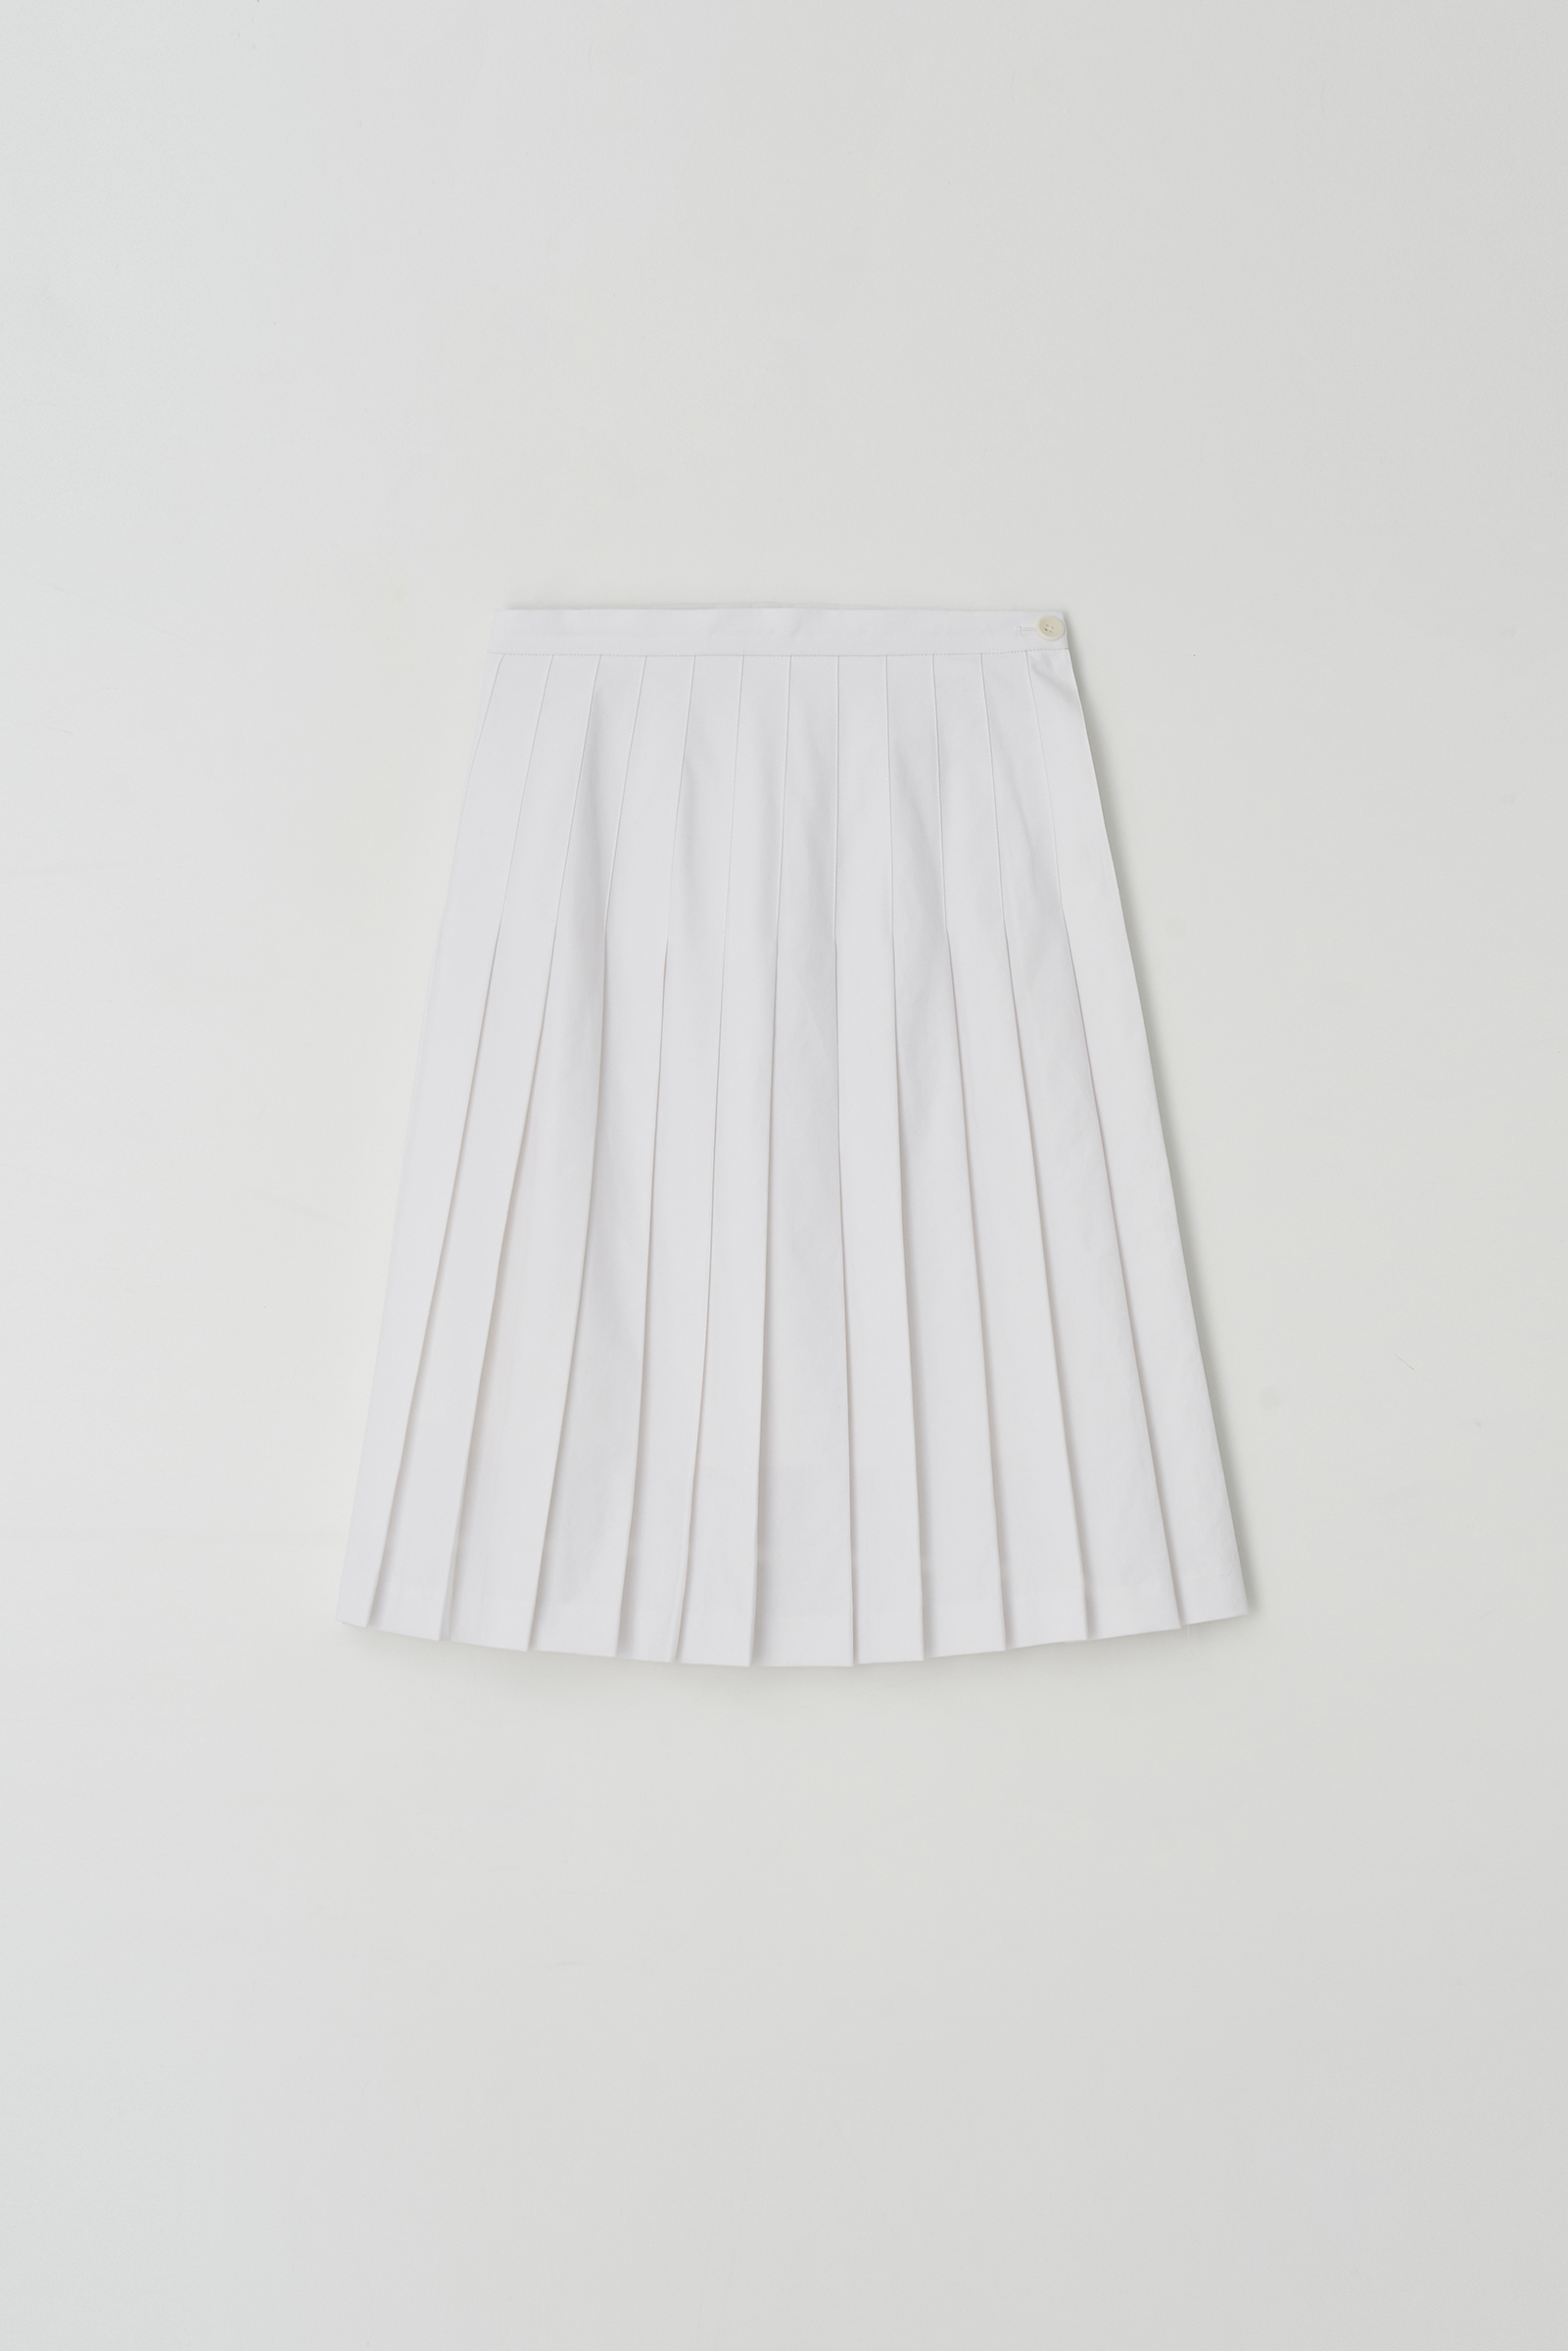 Cotton Pleats Skirt